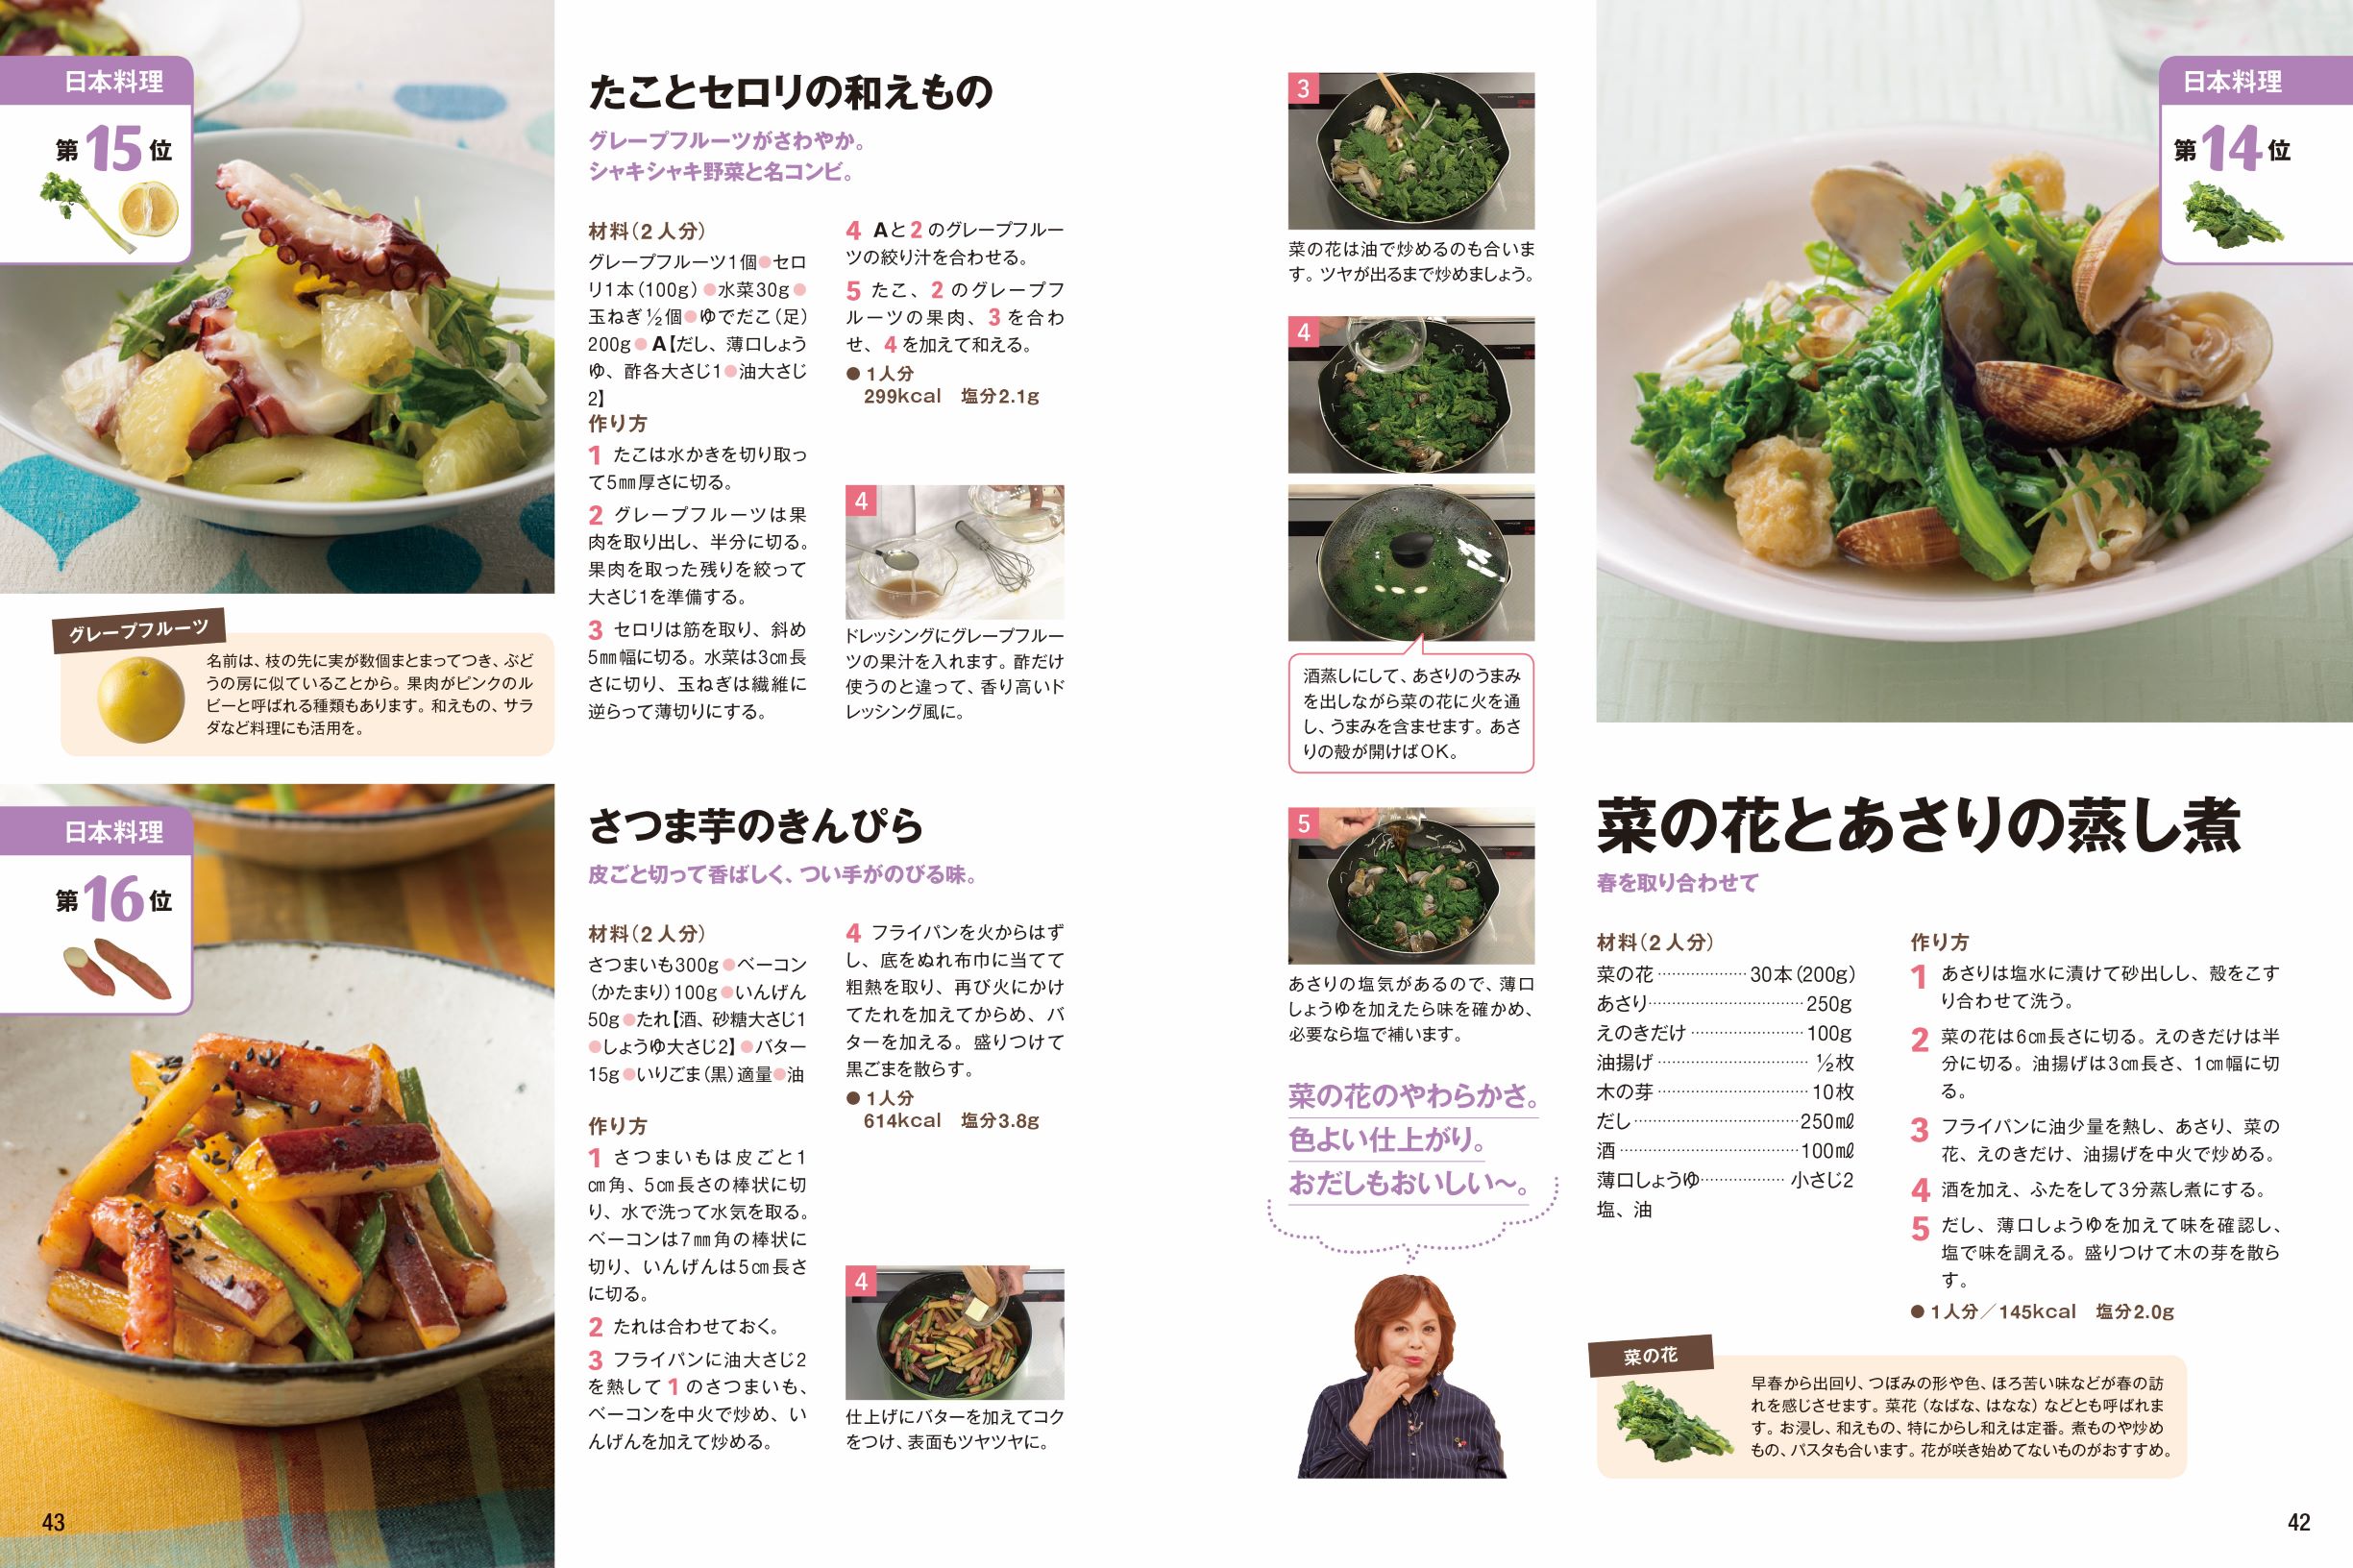 画像は、日本料理のページ